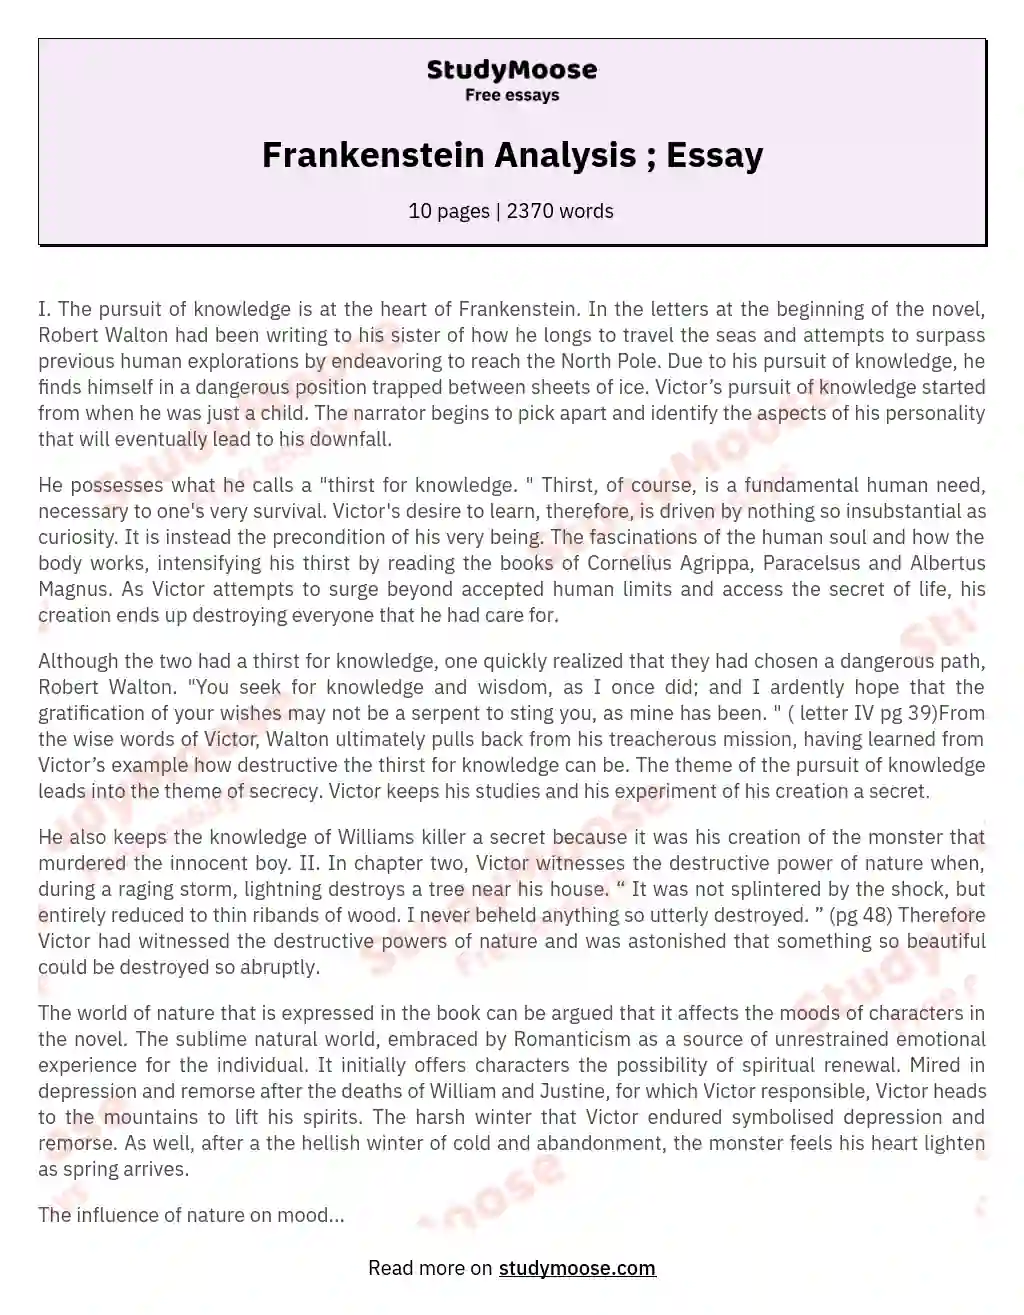 Frankenstein Analysis ; Essay essay